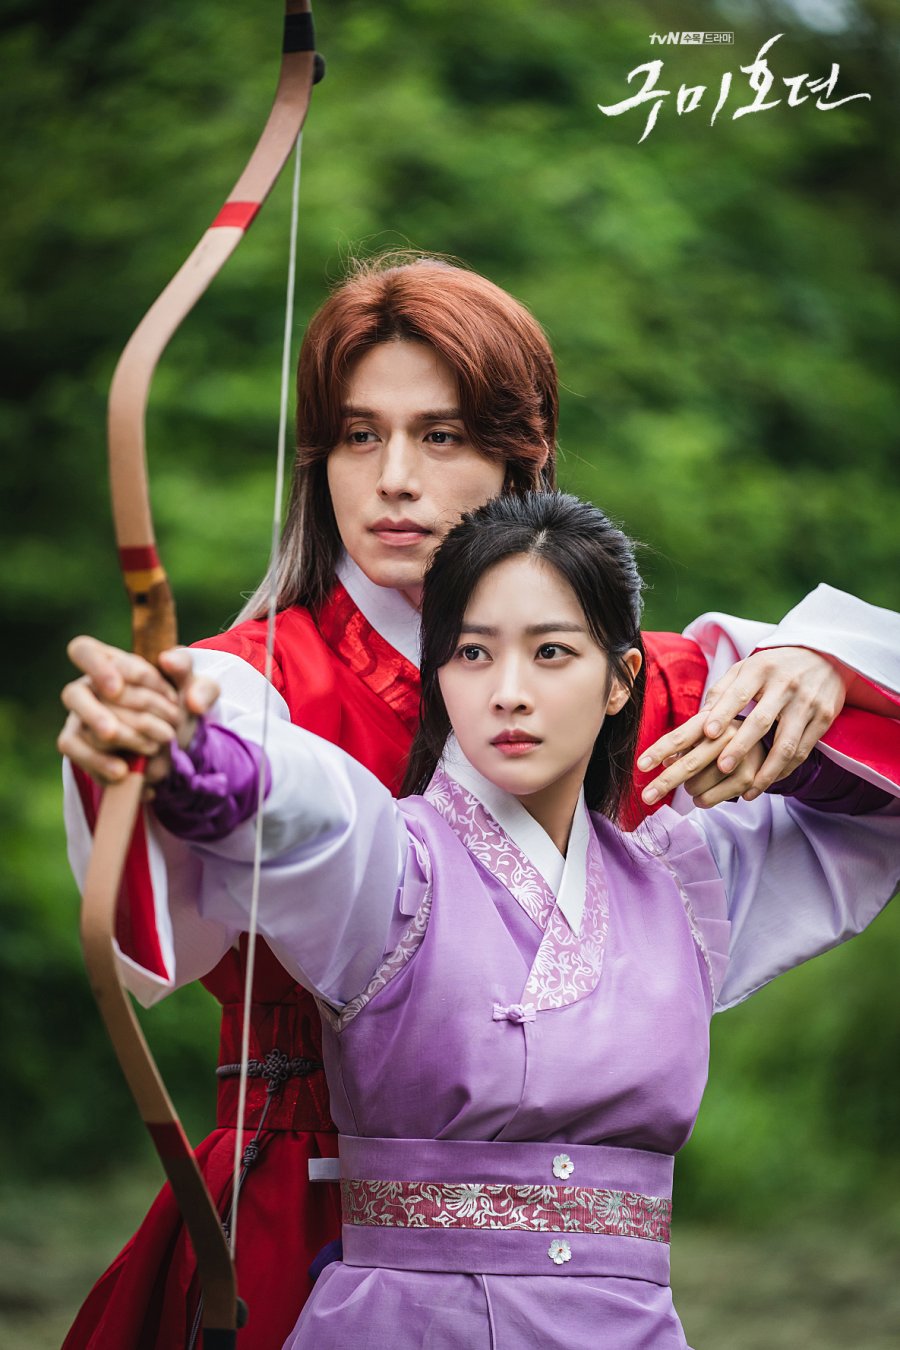 Historique Le drama coréen "Tale of the Nine-Tailed", un mélange de fantastique, romance et suspense.